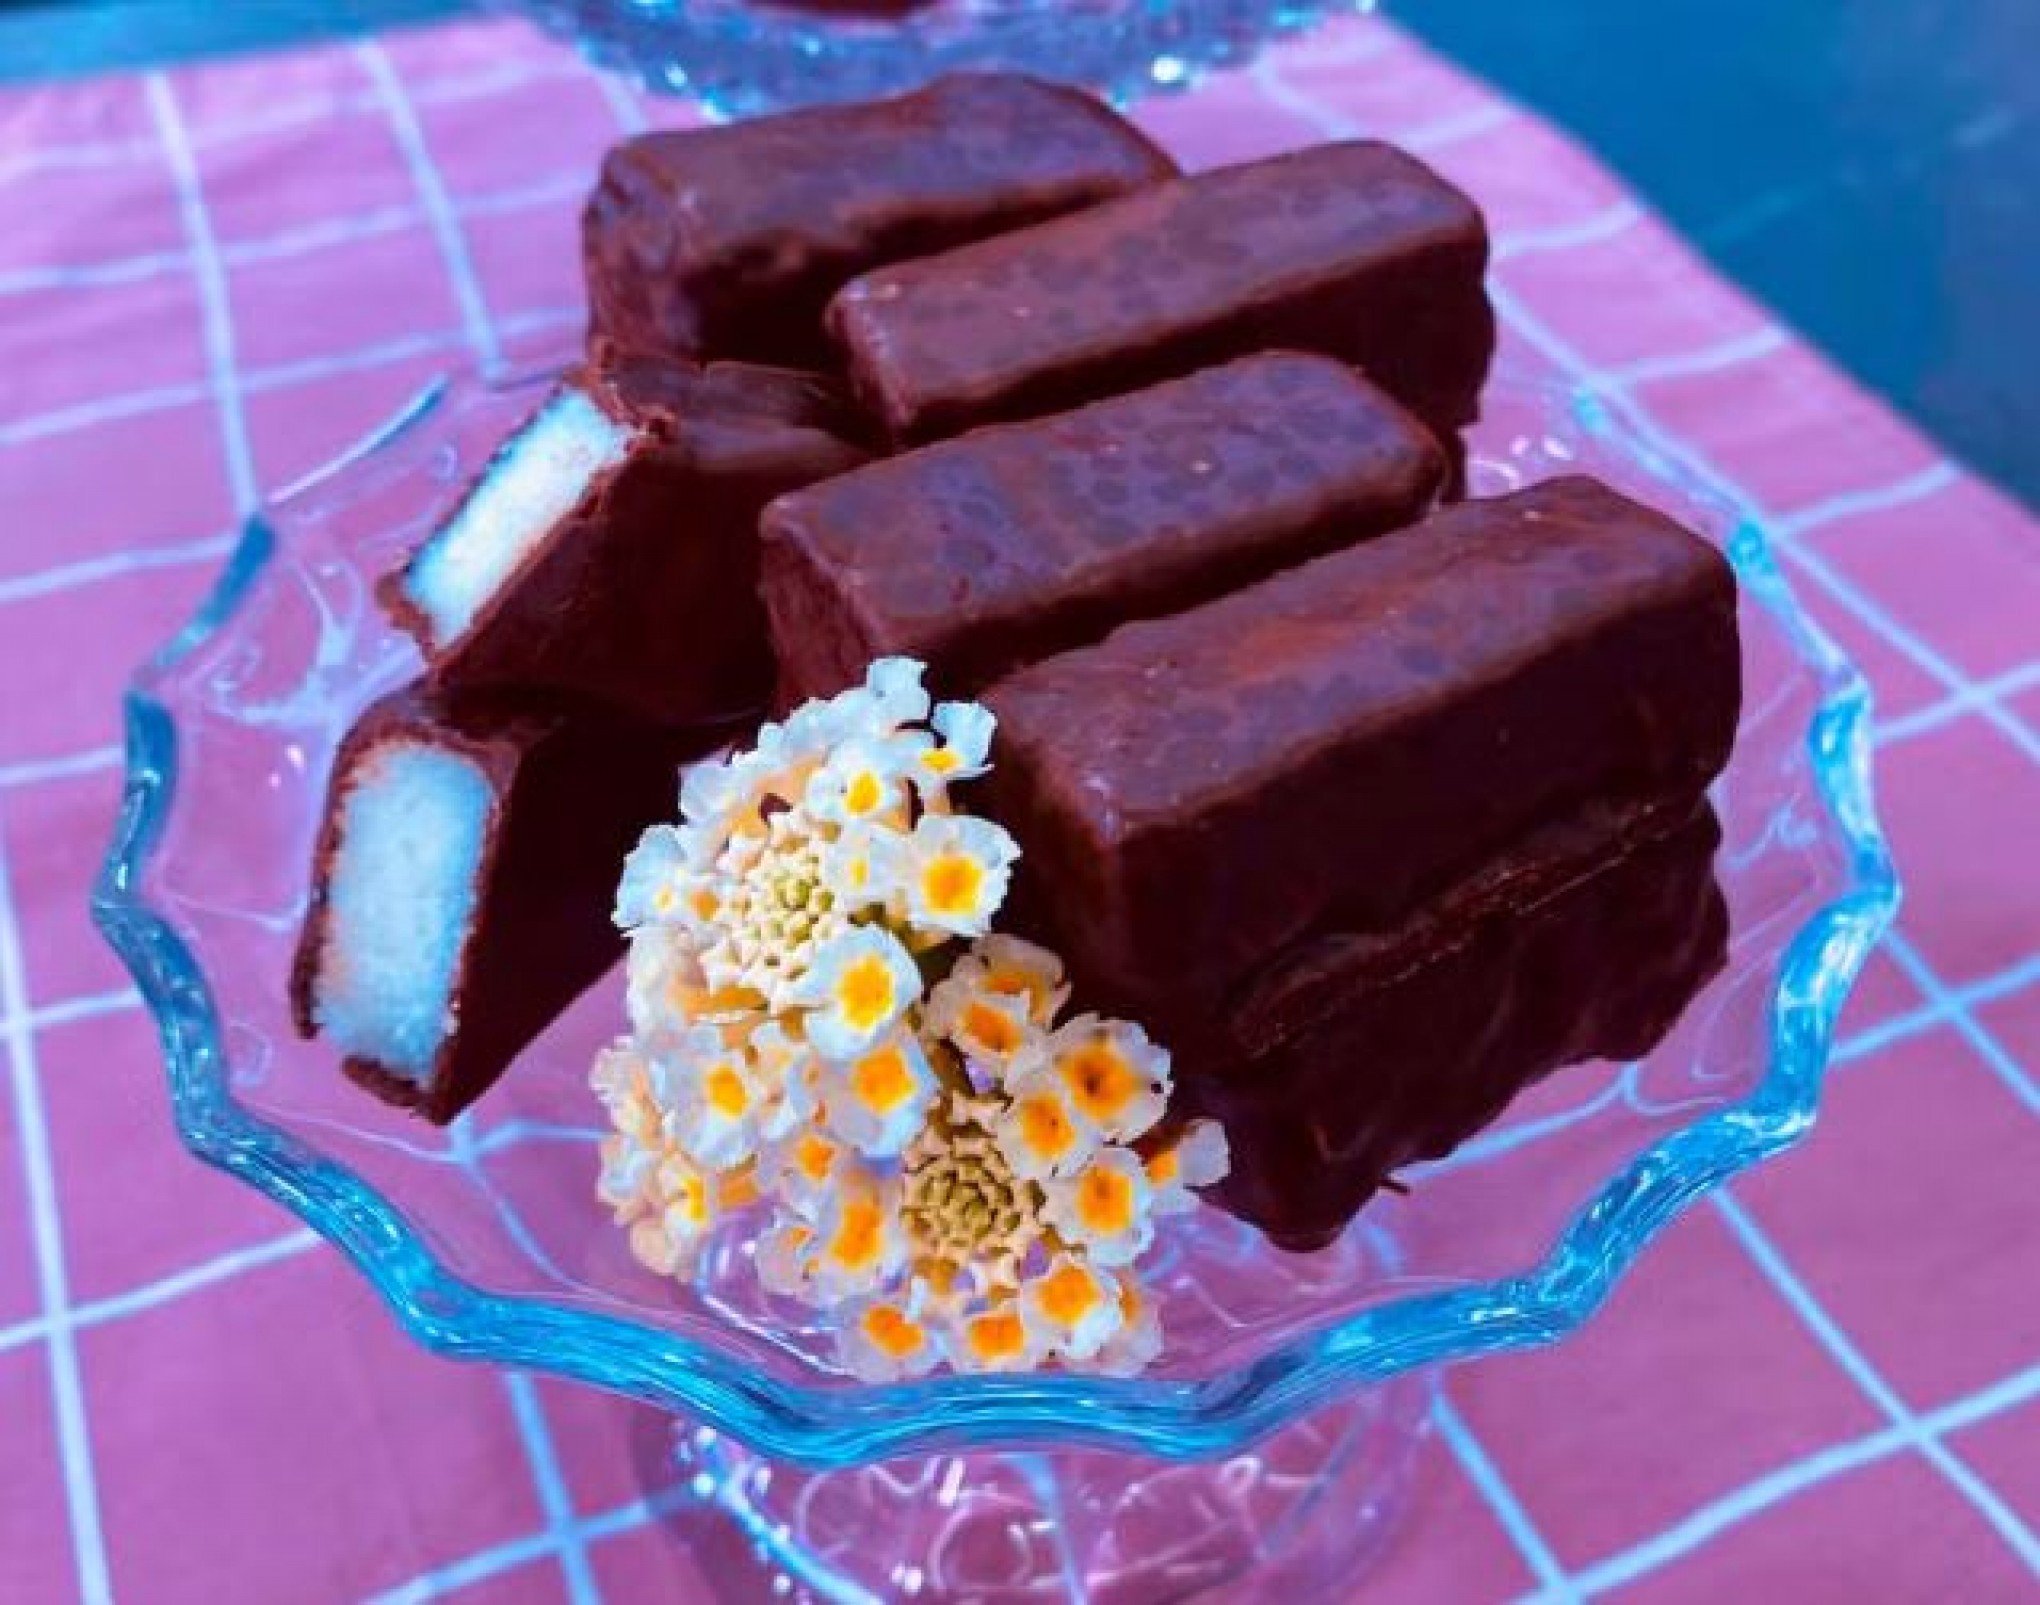 RECEITA DA ANA MARIA BRAGA: Saiba como fazer o Bombom de coco com chocolate preparado nesta quinta-feira, 21 de março